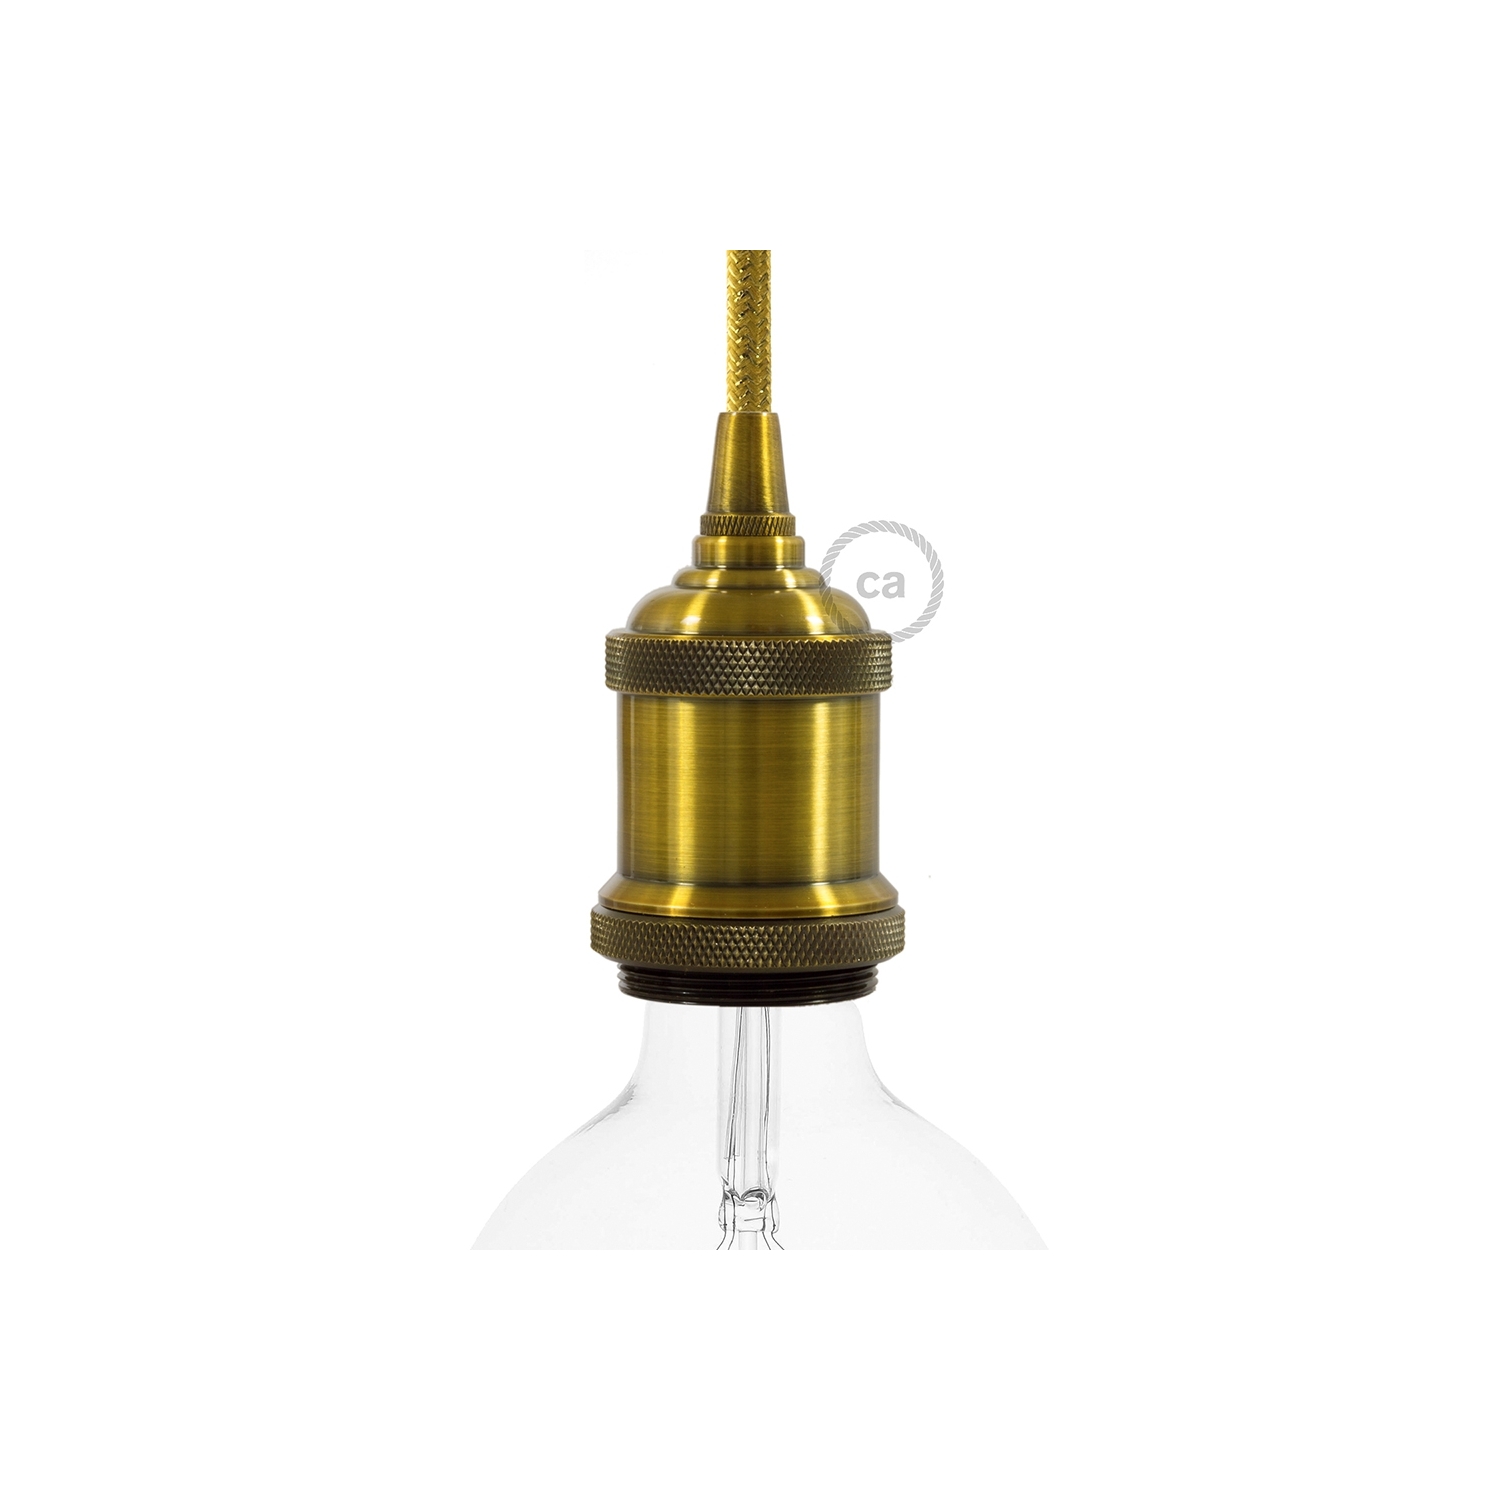 Vintage Style - single ferrule light bulb socket kits - E26